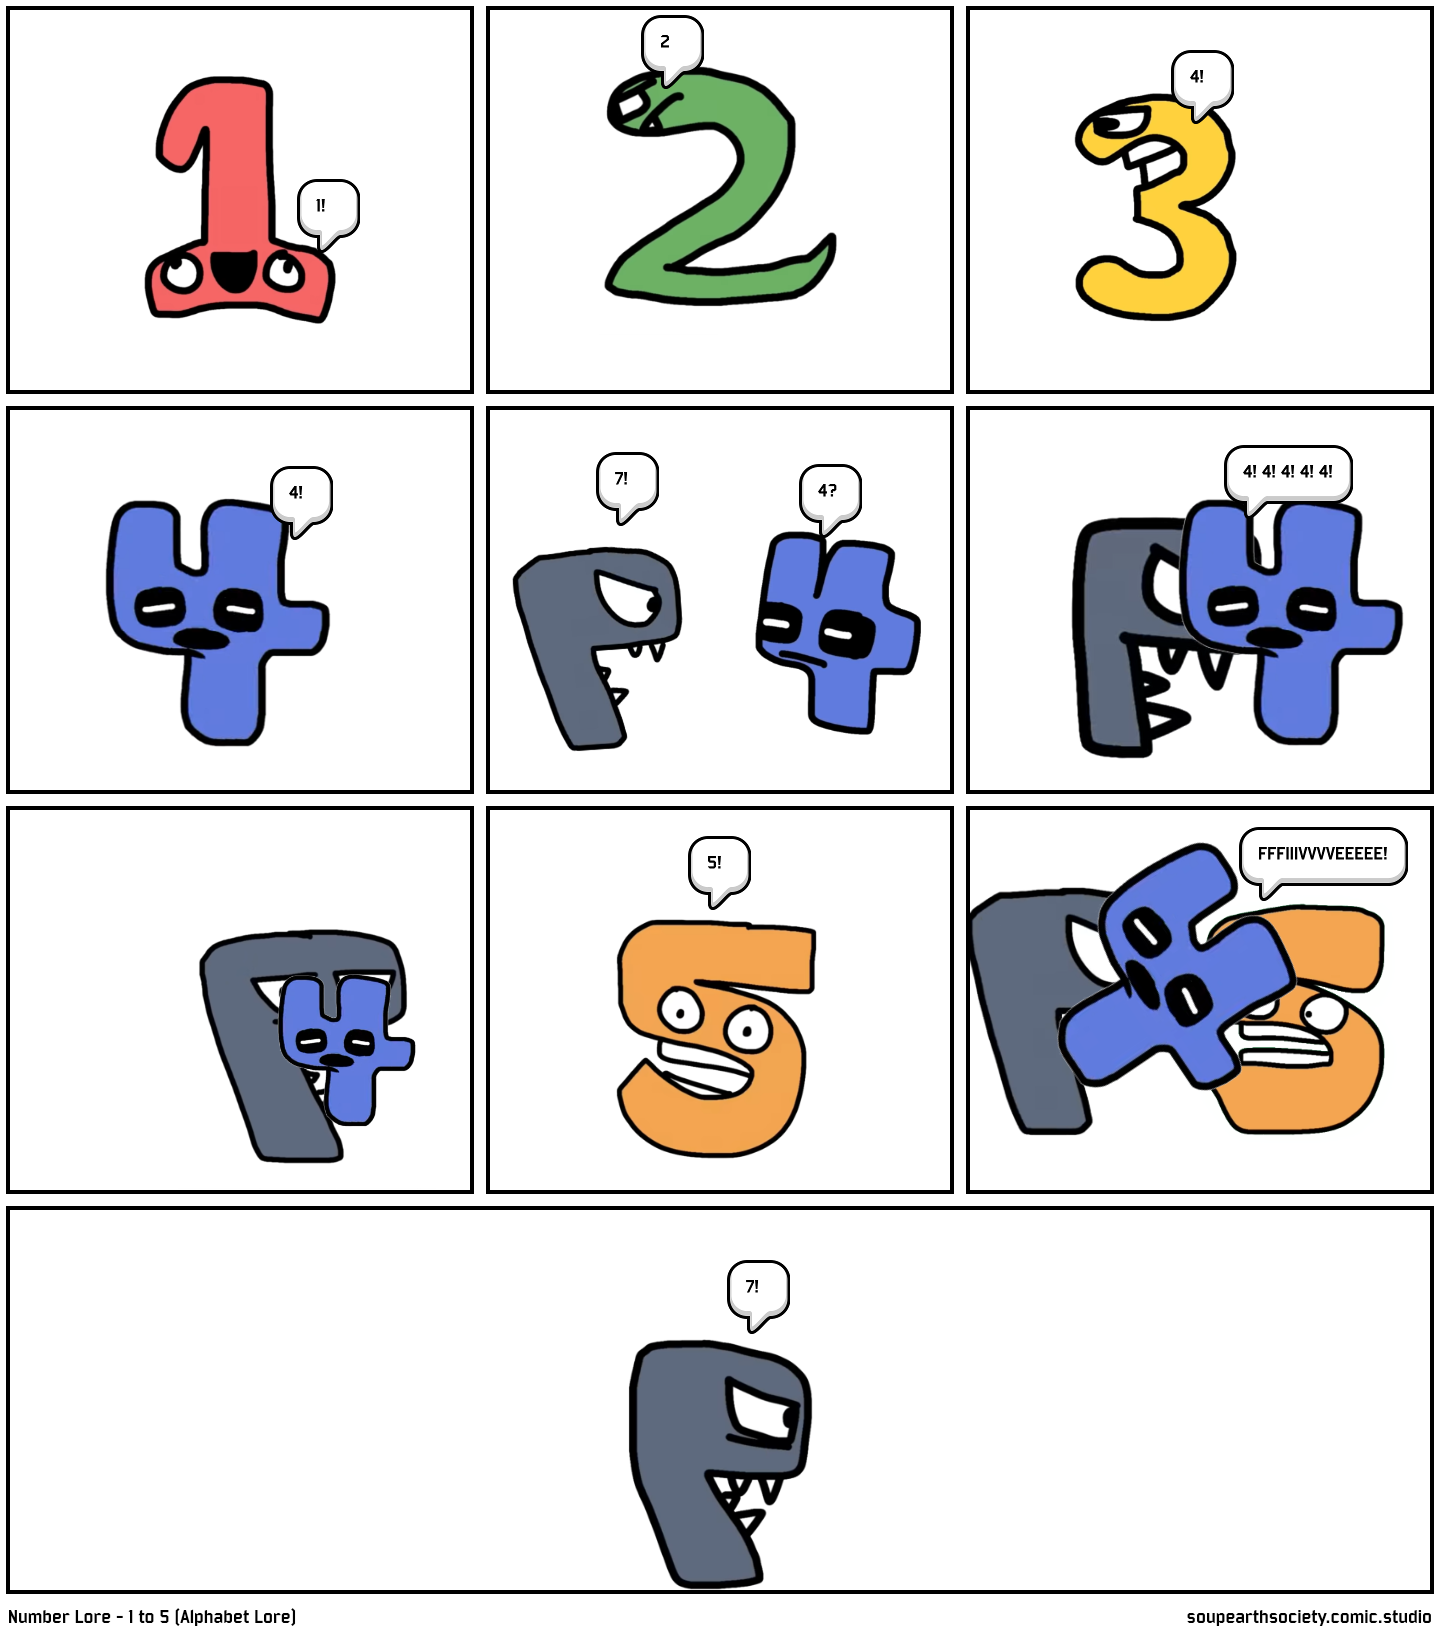 Number Lore - 7 (Alphabet Lore) - Comic Studio